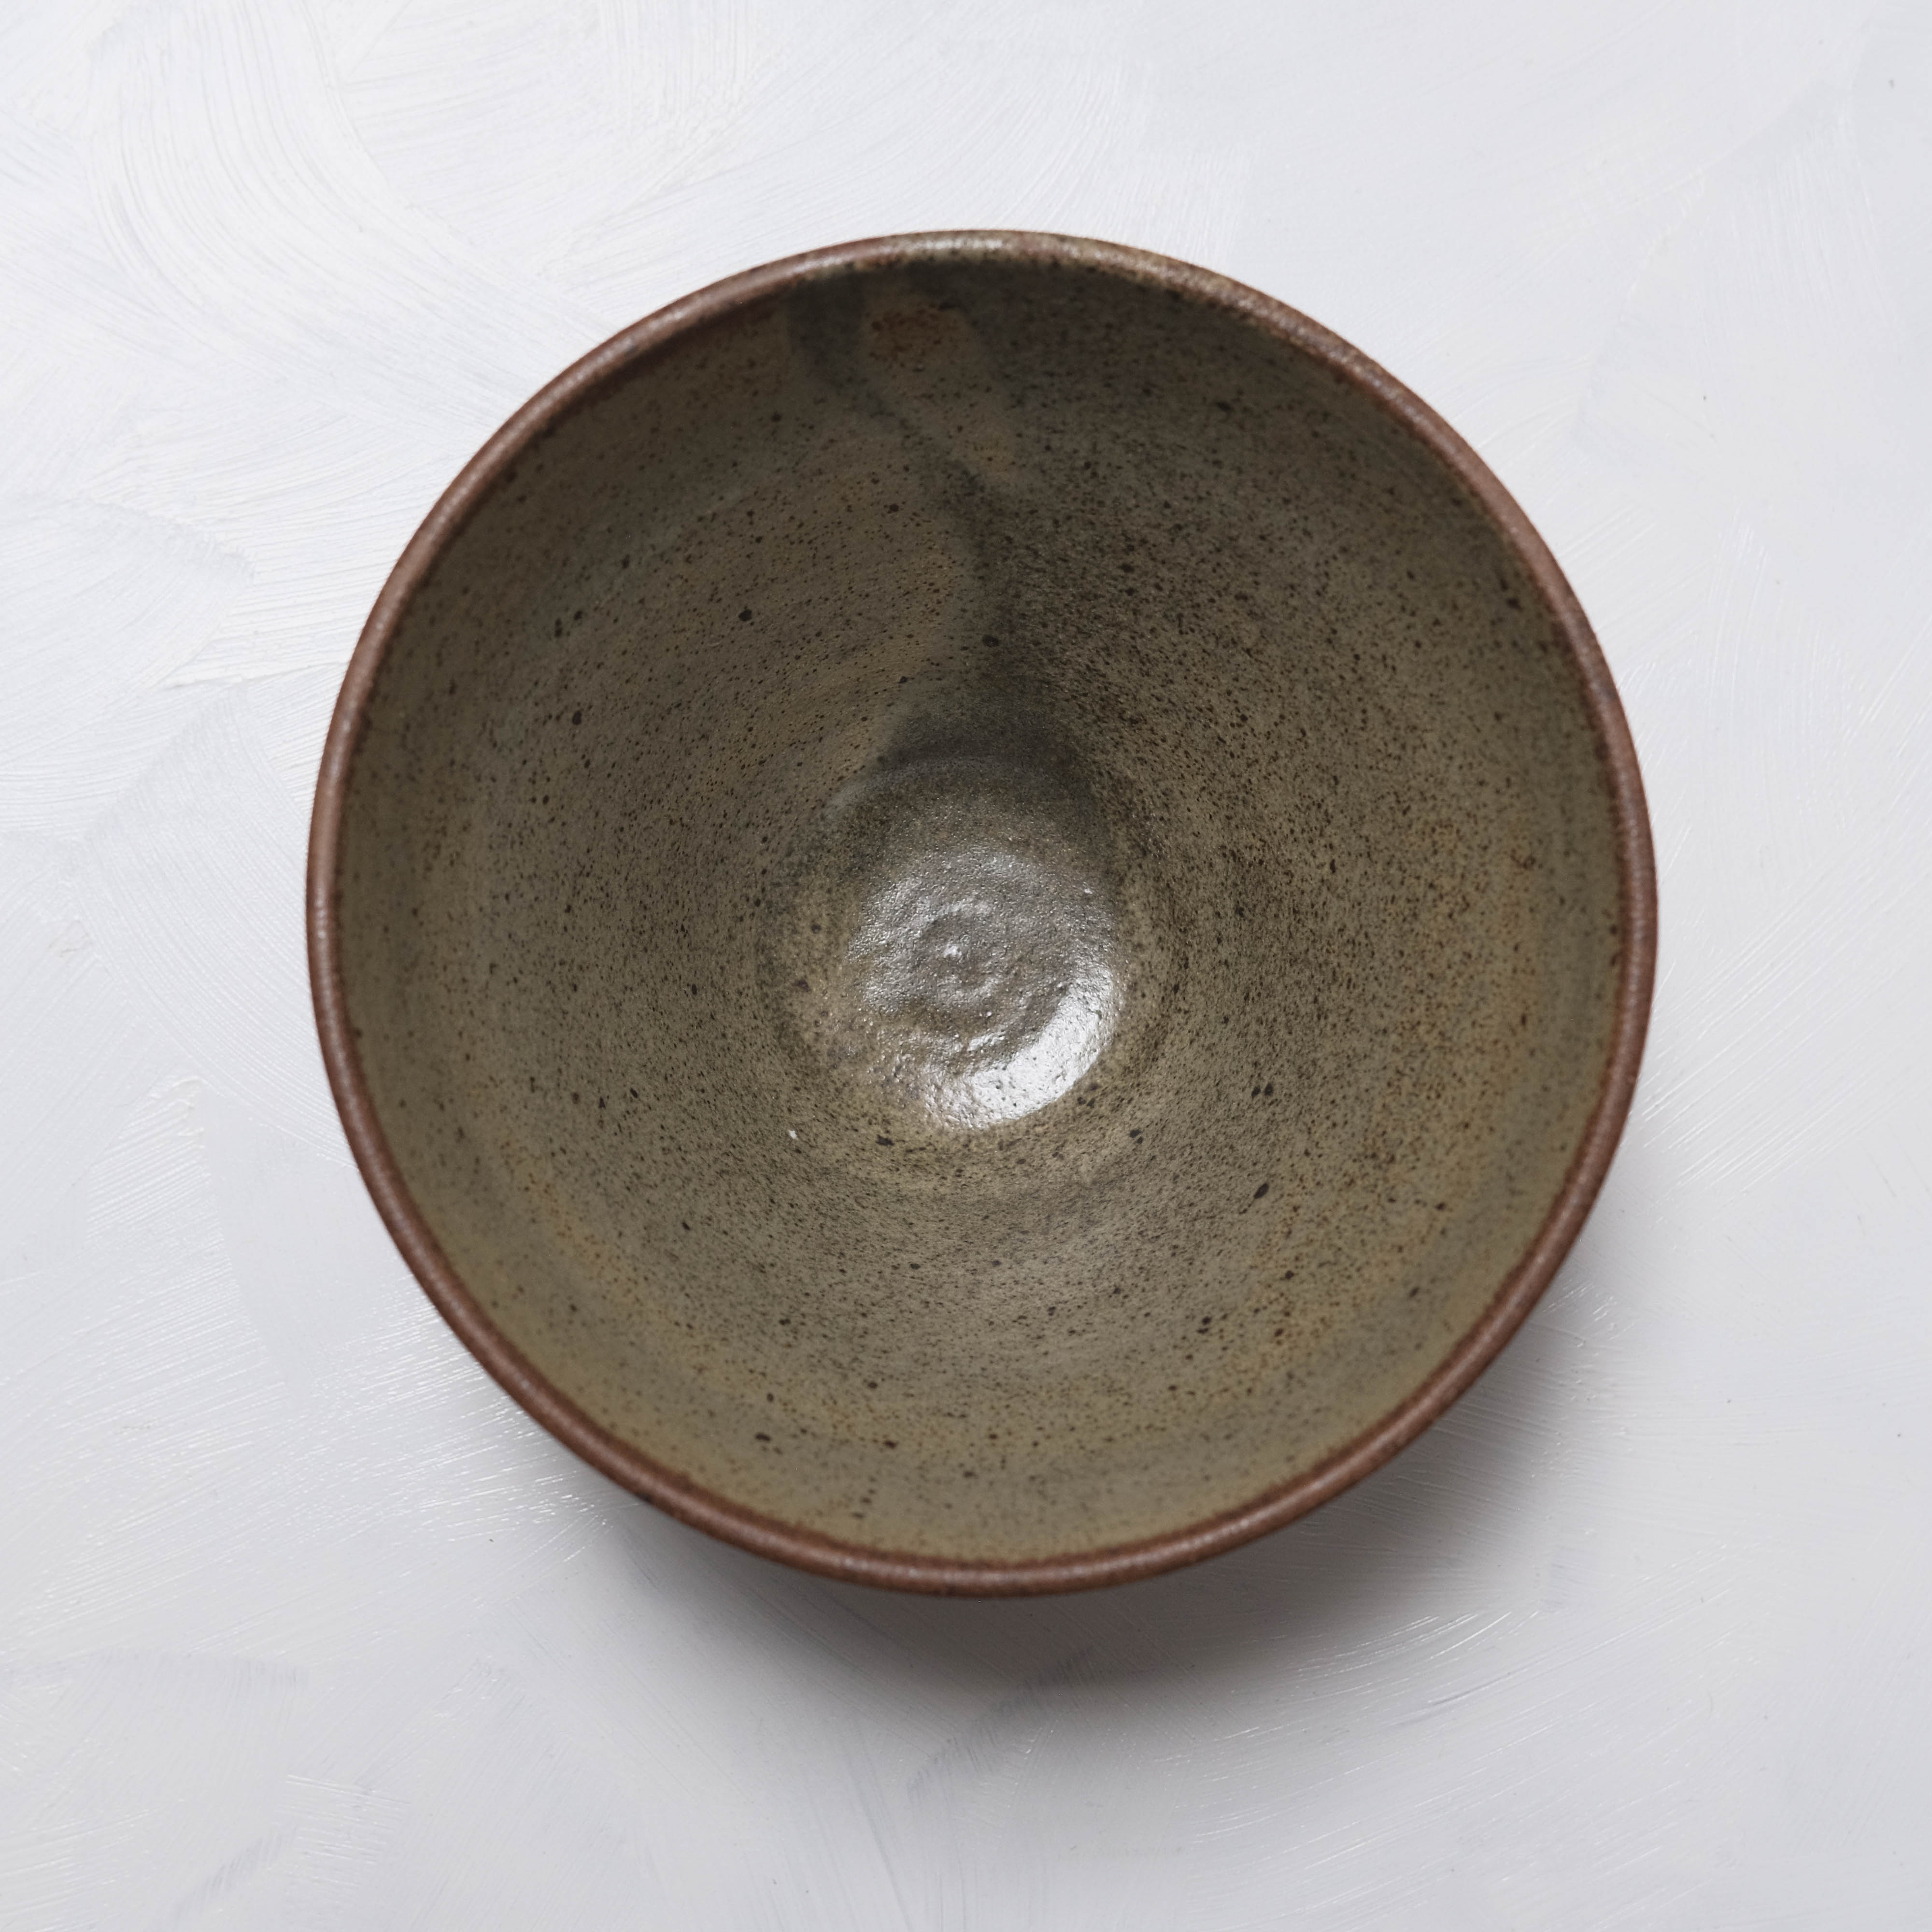 Haigusuri (灰釉) Bowl #ASH03